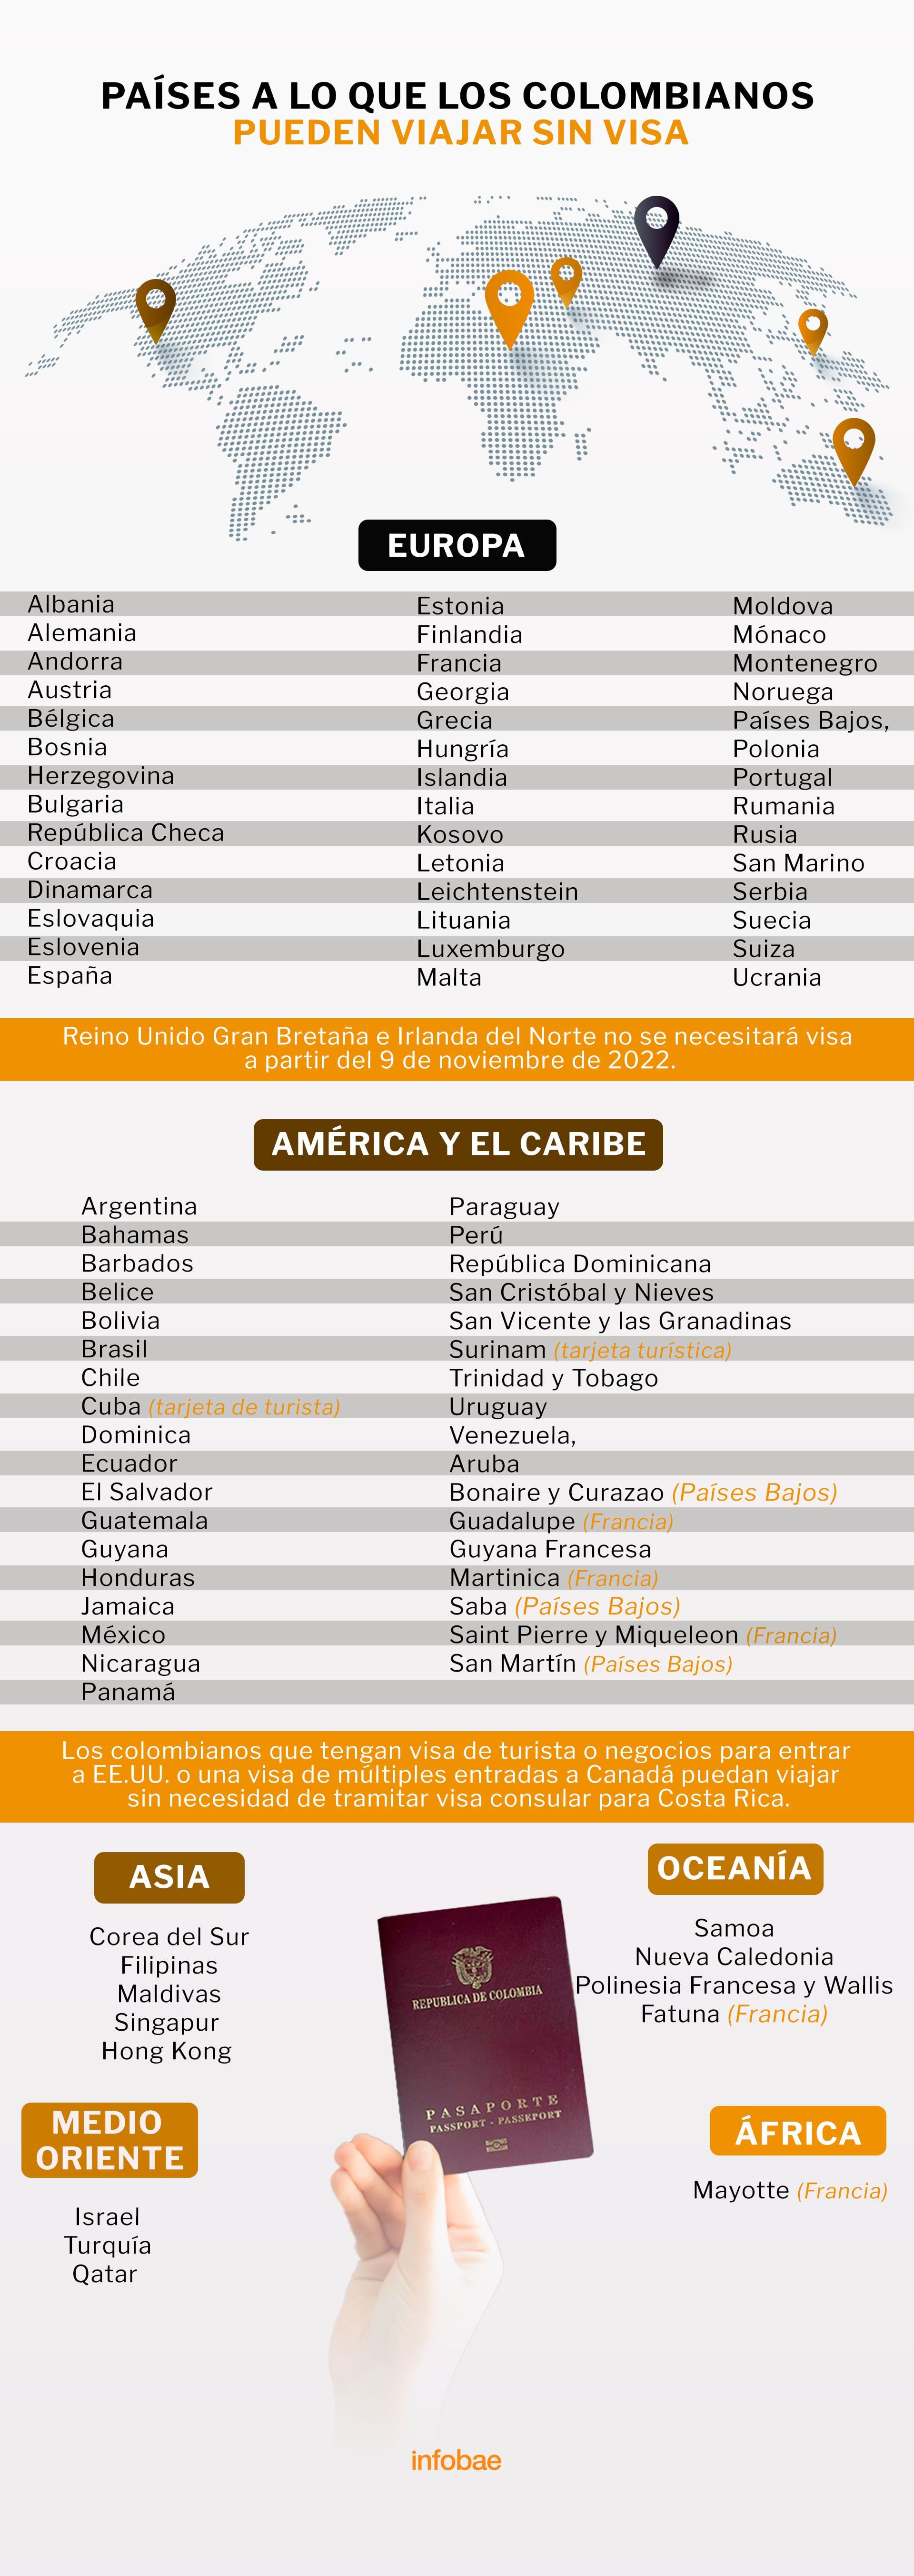 Países que los colombianos puedes visitar sin visa. Foto: Infobae